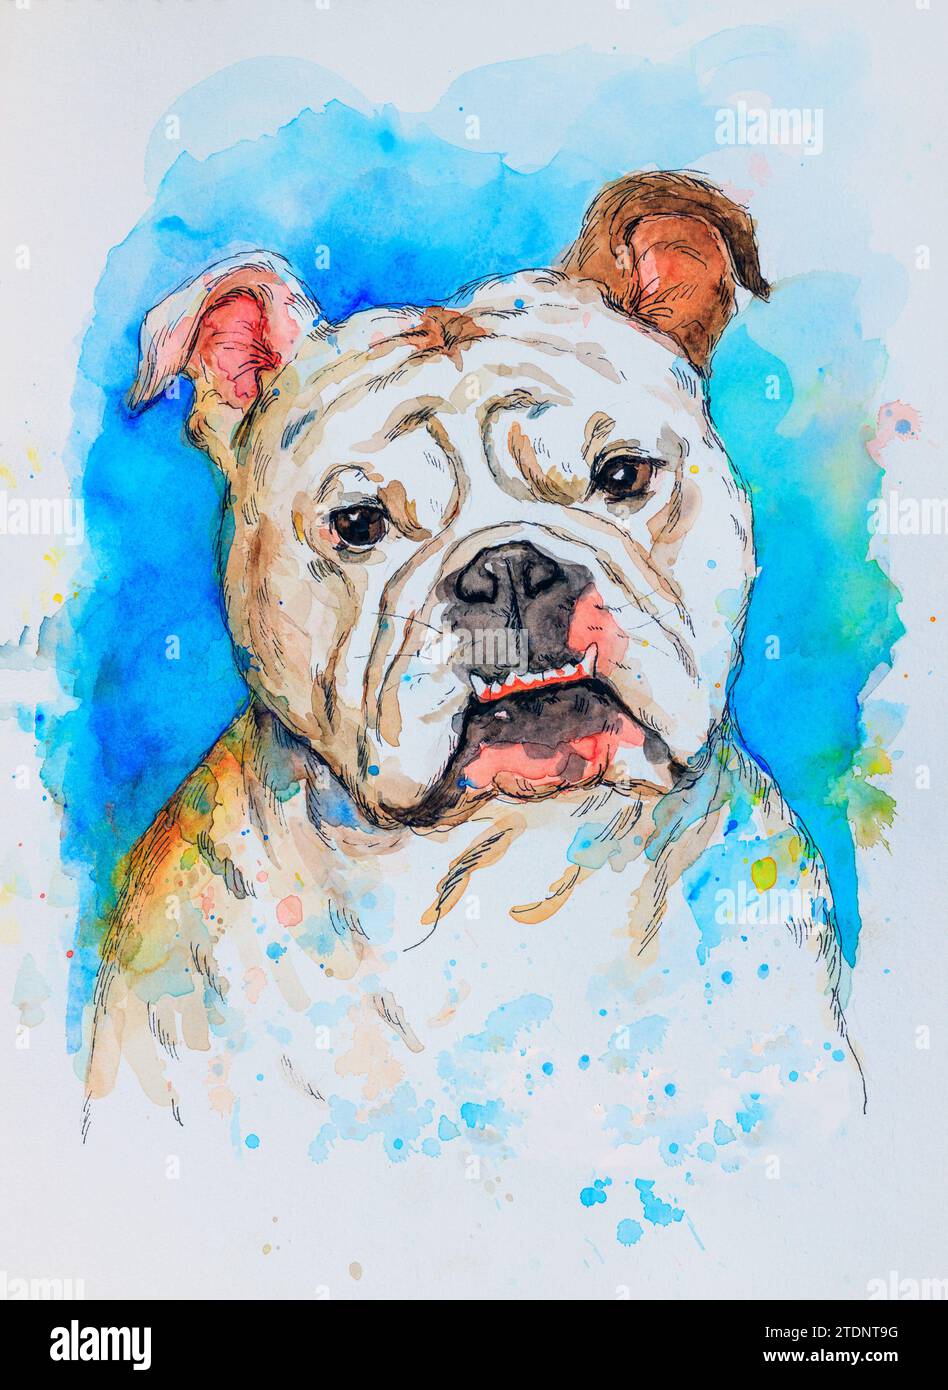 Portrait d'un Bulldog anglais. Dessin artistique à la main aquarelle colorée sur fond bleu et blanc. Concept d'animal de compagnie pour chien. Banque D'Images